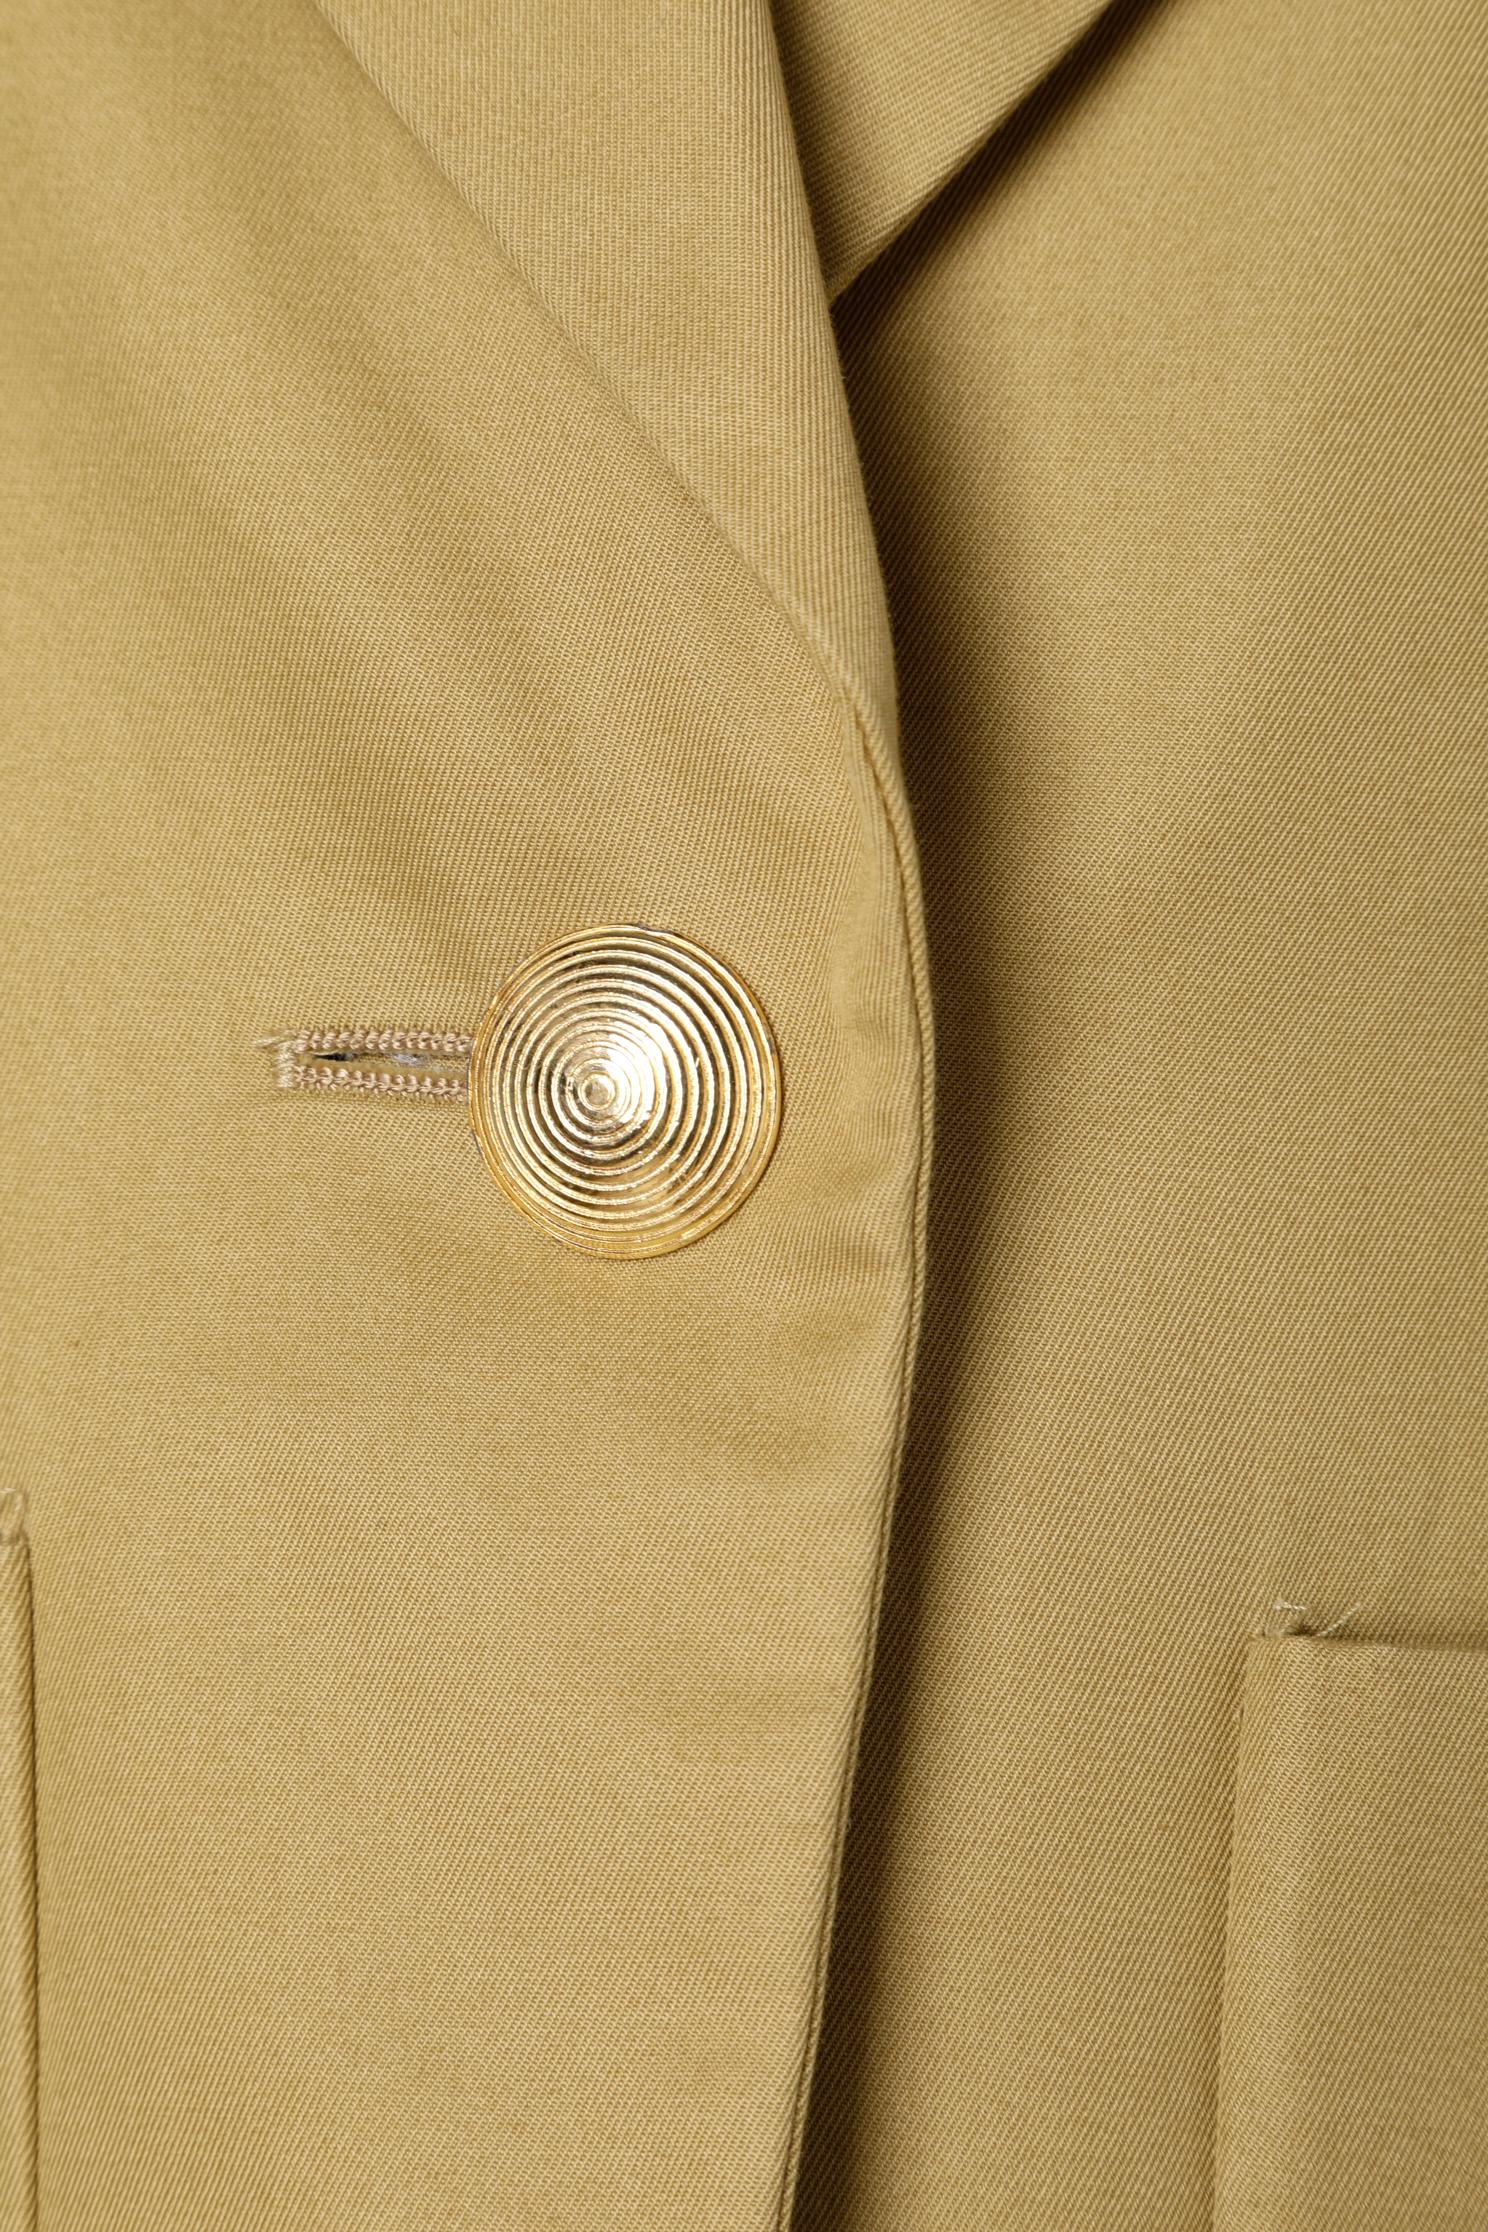 tan blazer gold buttons